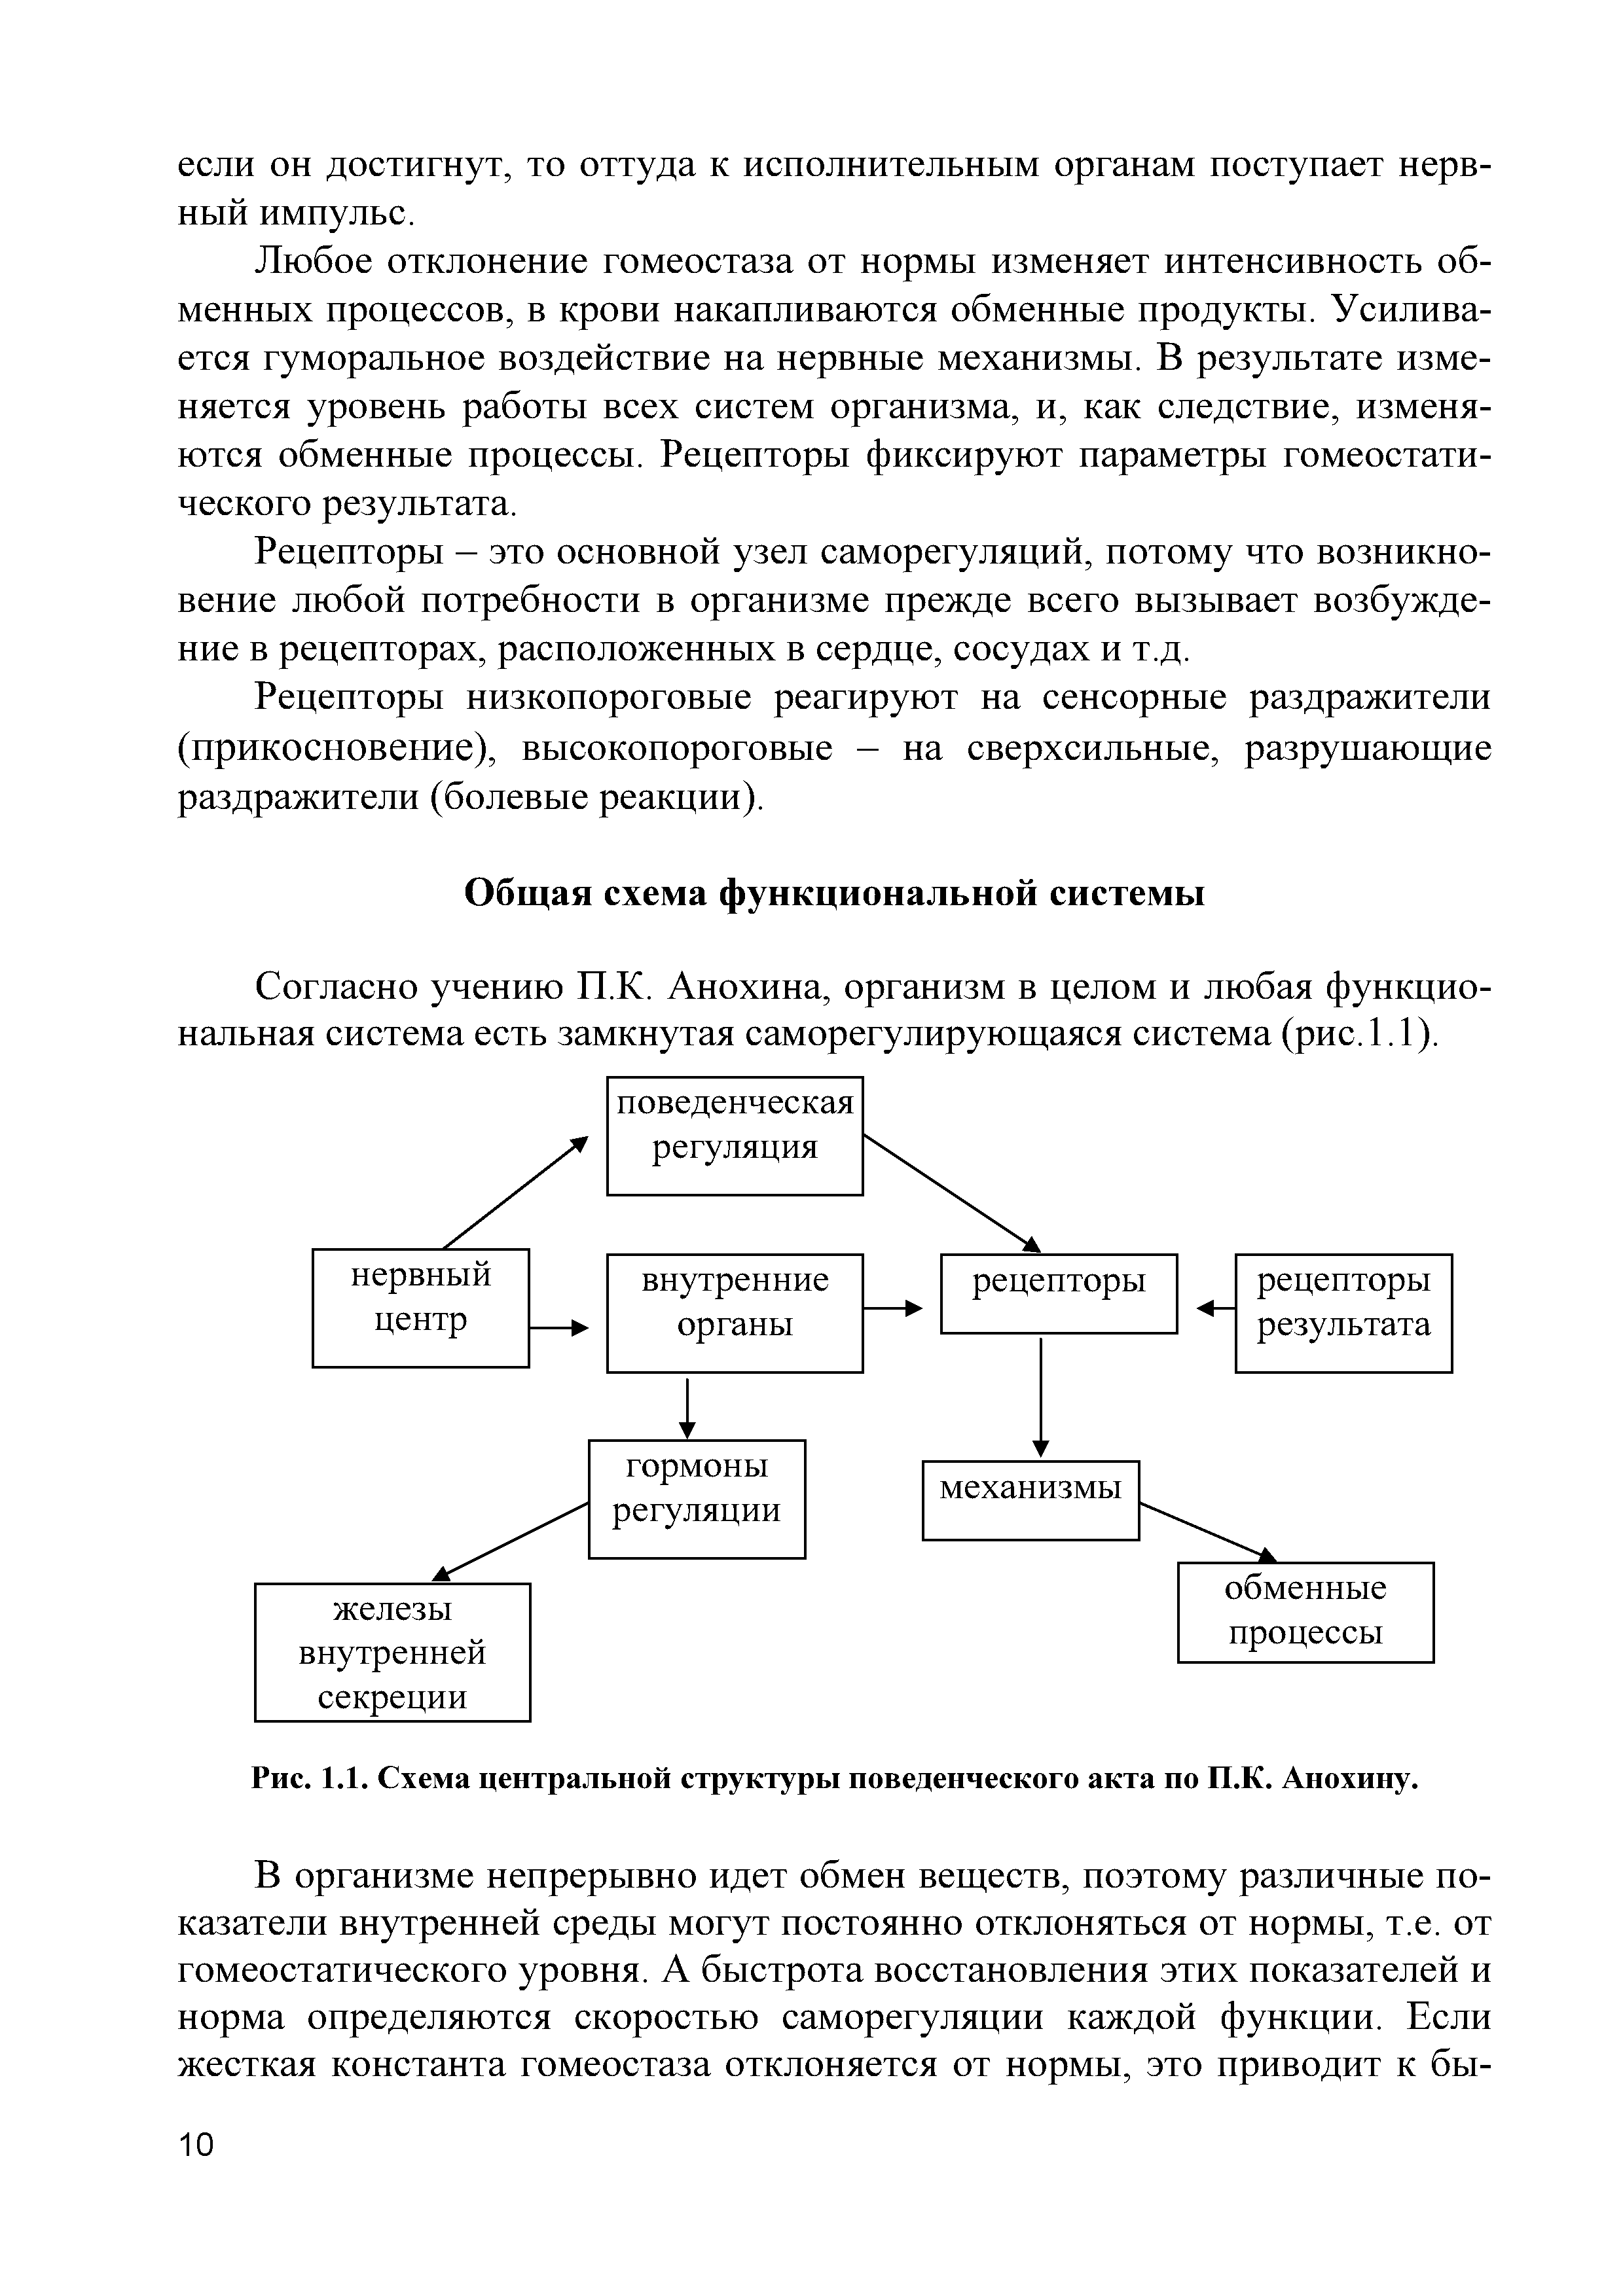 Рис. 1.1. Схема центральной структуры поведенческого акта по П.К. Анохину.